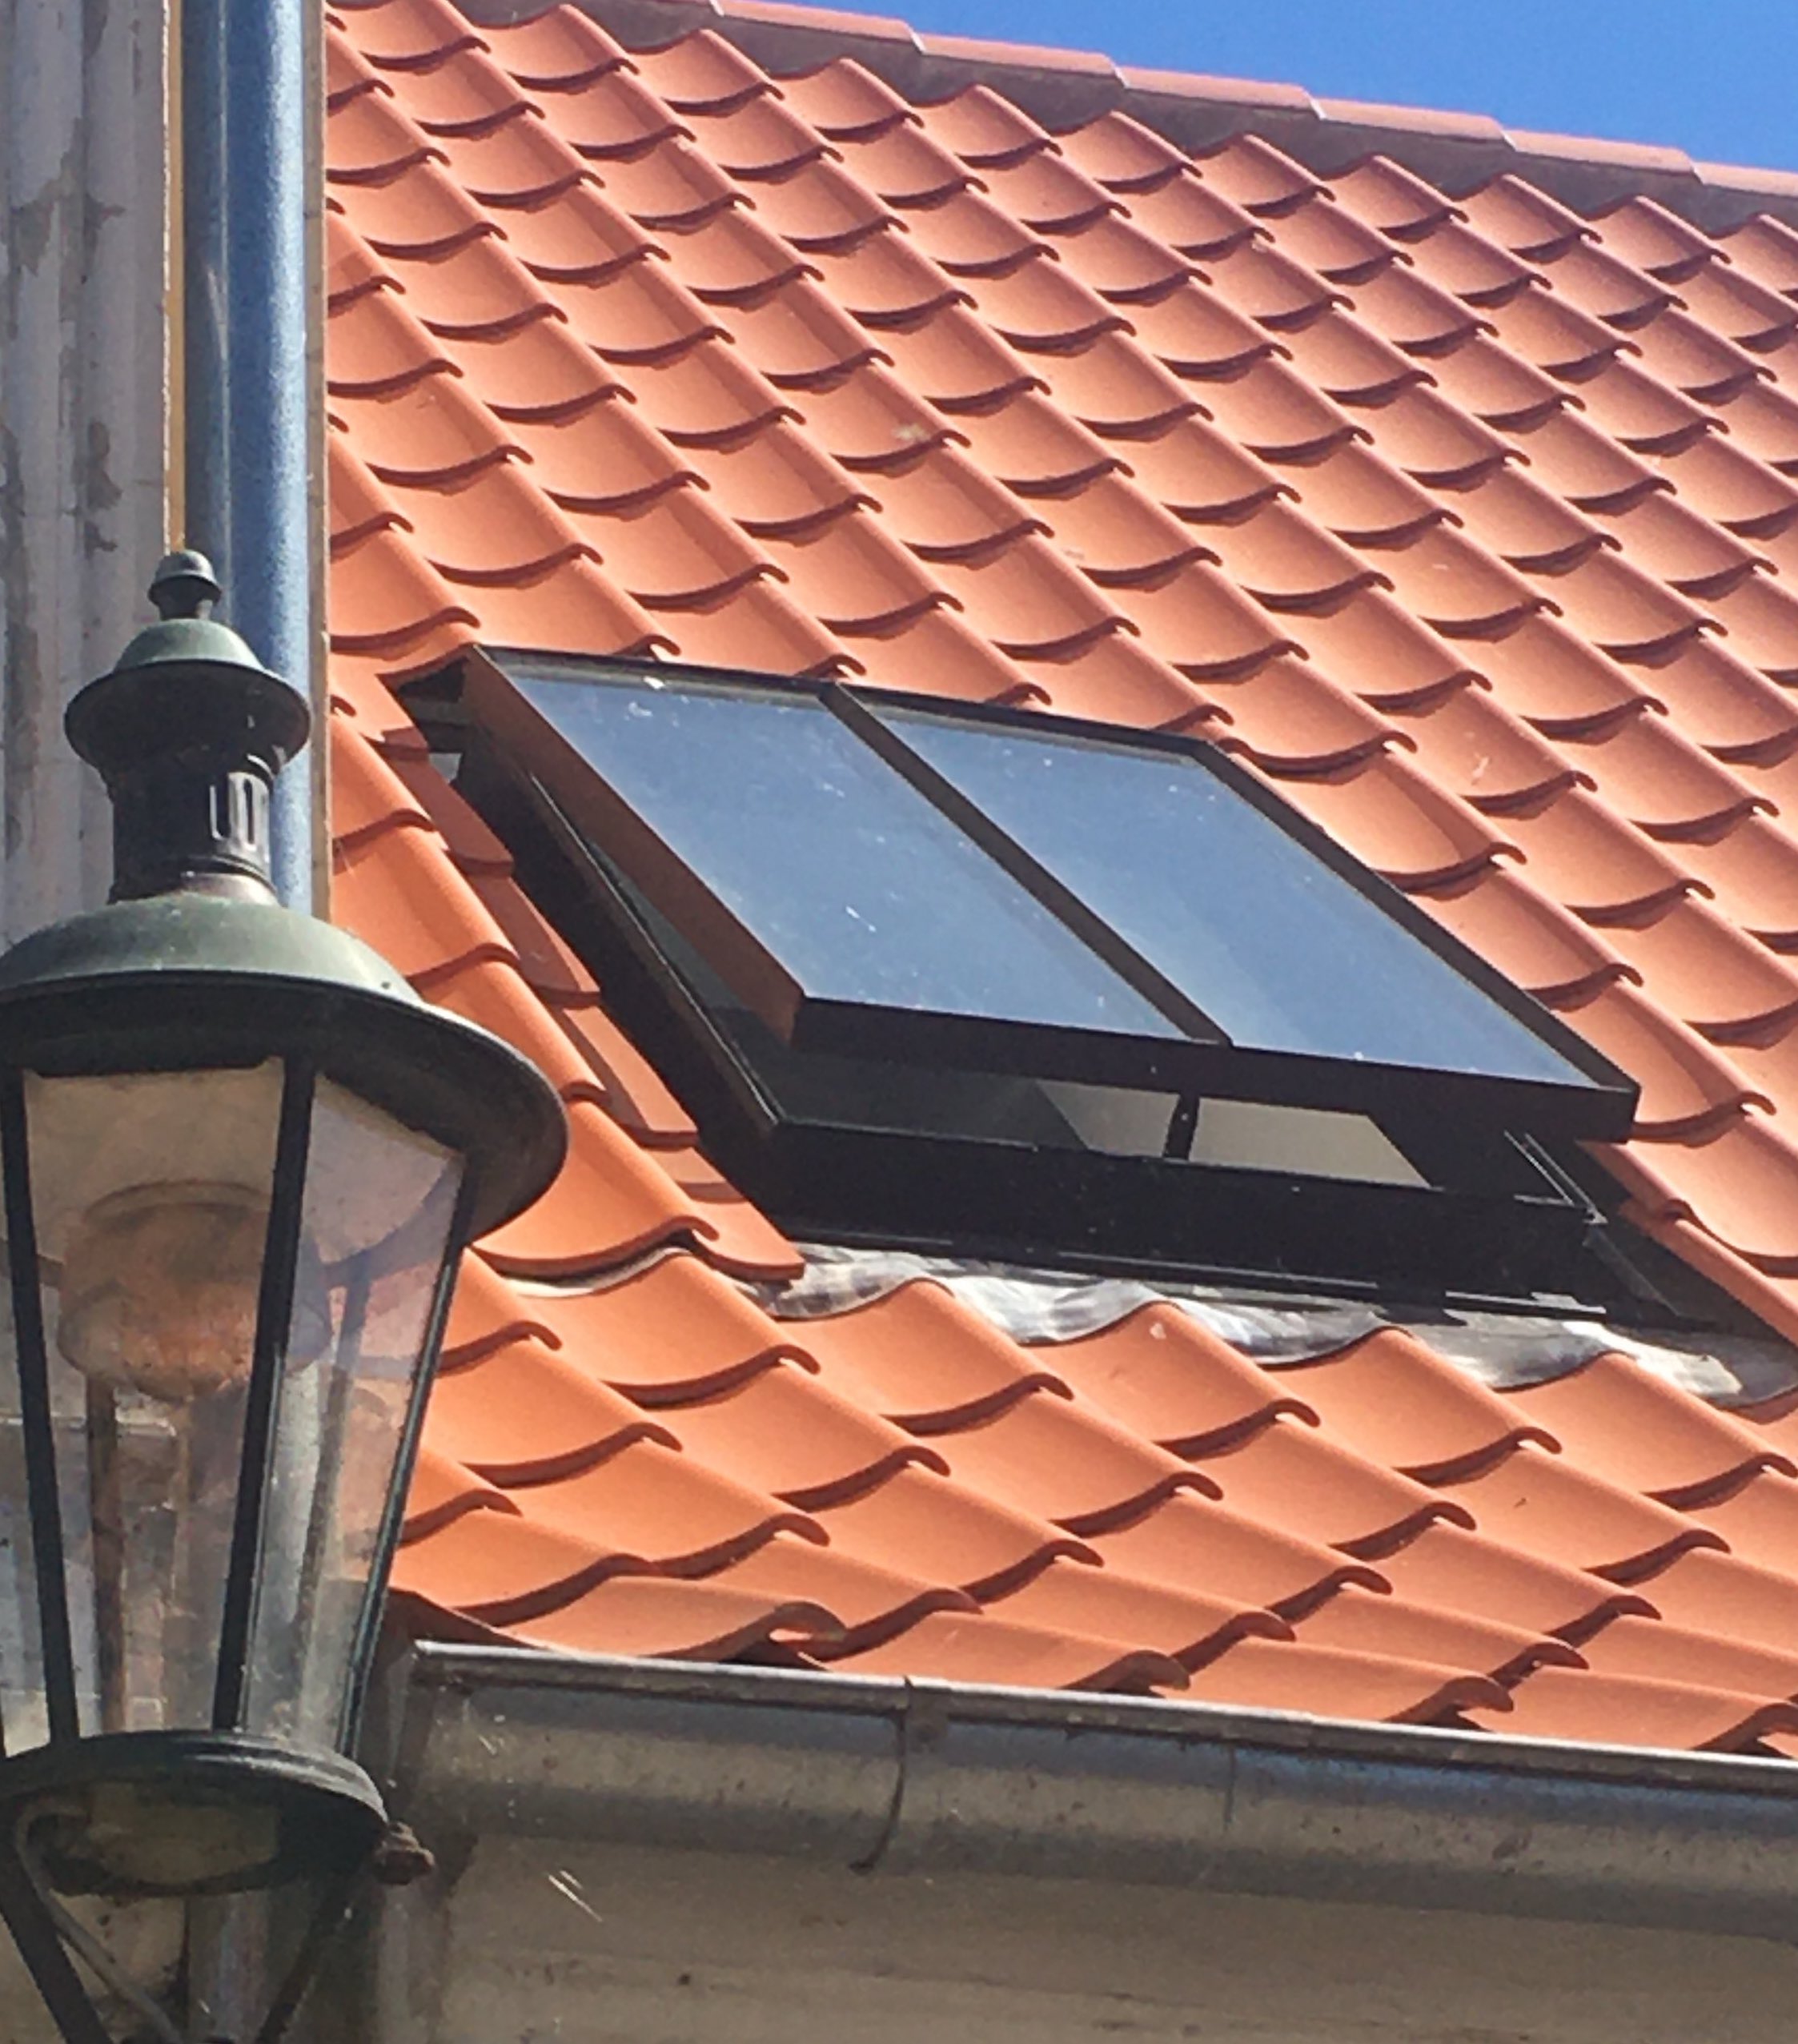 510.0003.70 Dachfenster DRKK 44 x 60 cm (Fensterteil) Oben Rundbogen Vertikale Einteilung Eisen pulverbeschichtet 